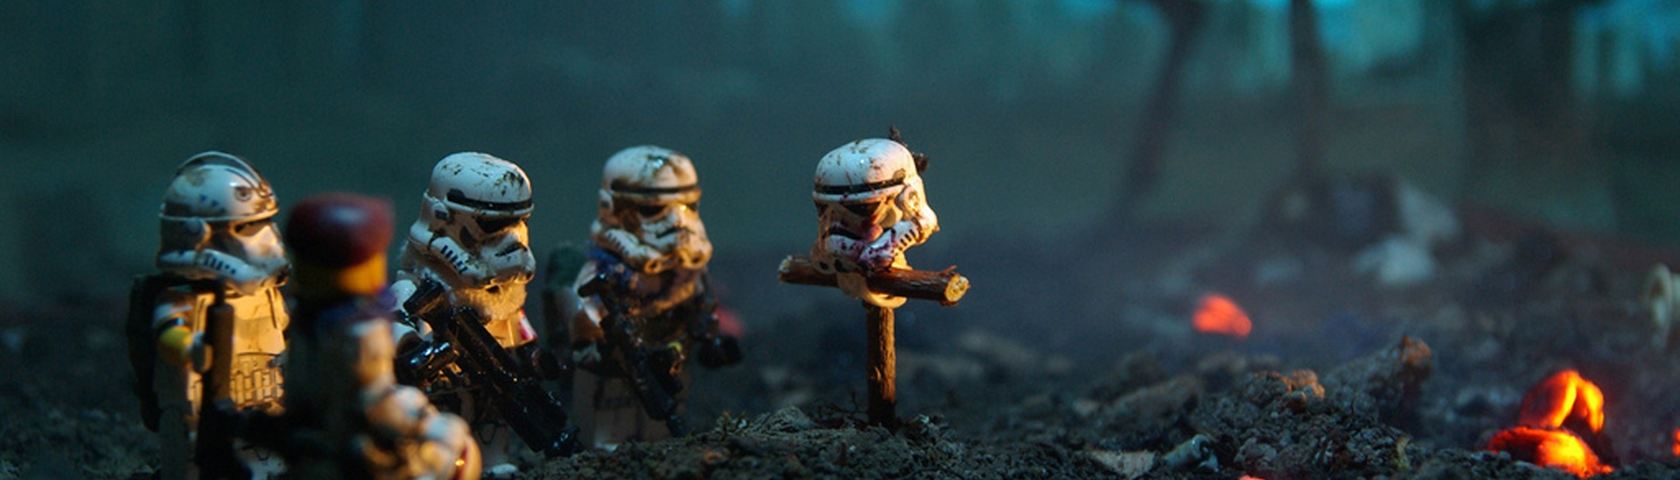 Storm Trooper Funeral